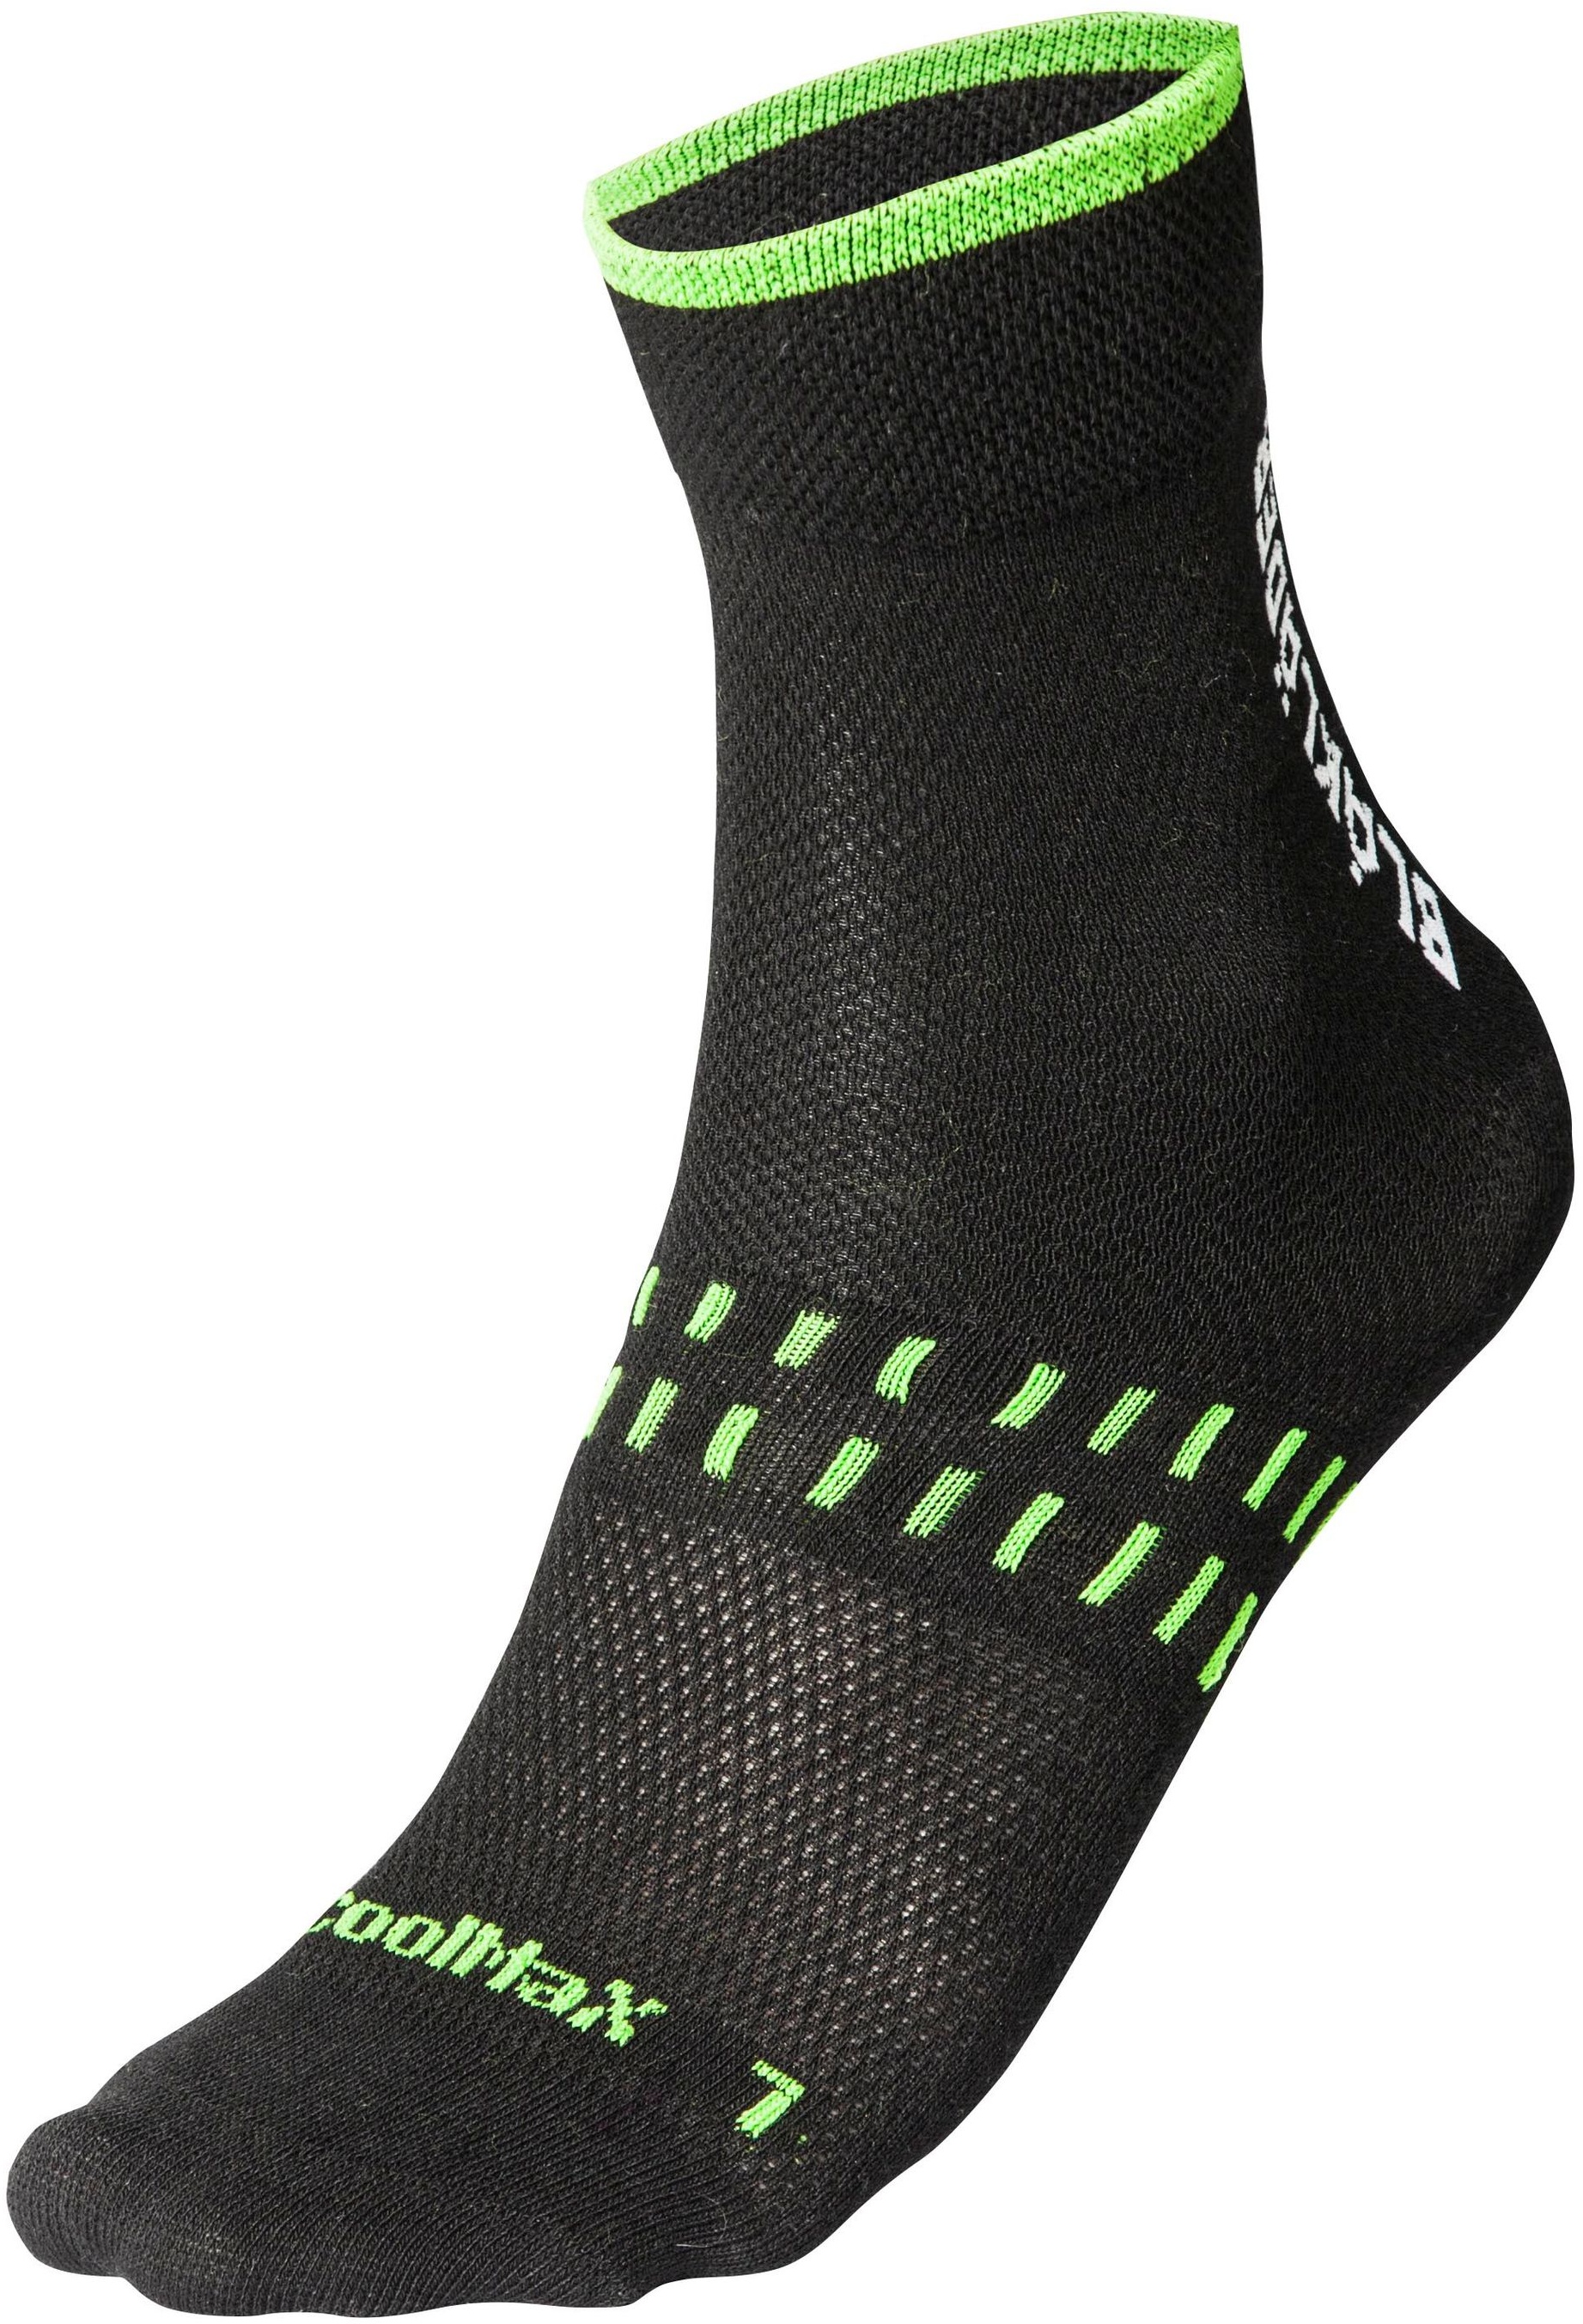 Blakläder Socken 2er-Pack dry 2190 1093 in schwarz/neon grün - 40-44